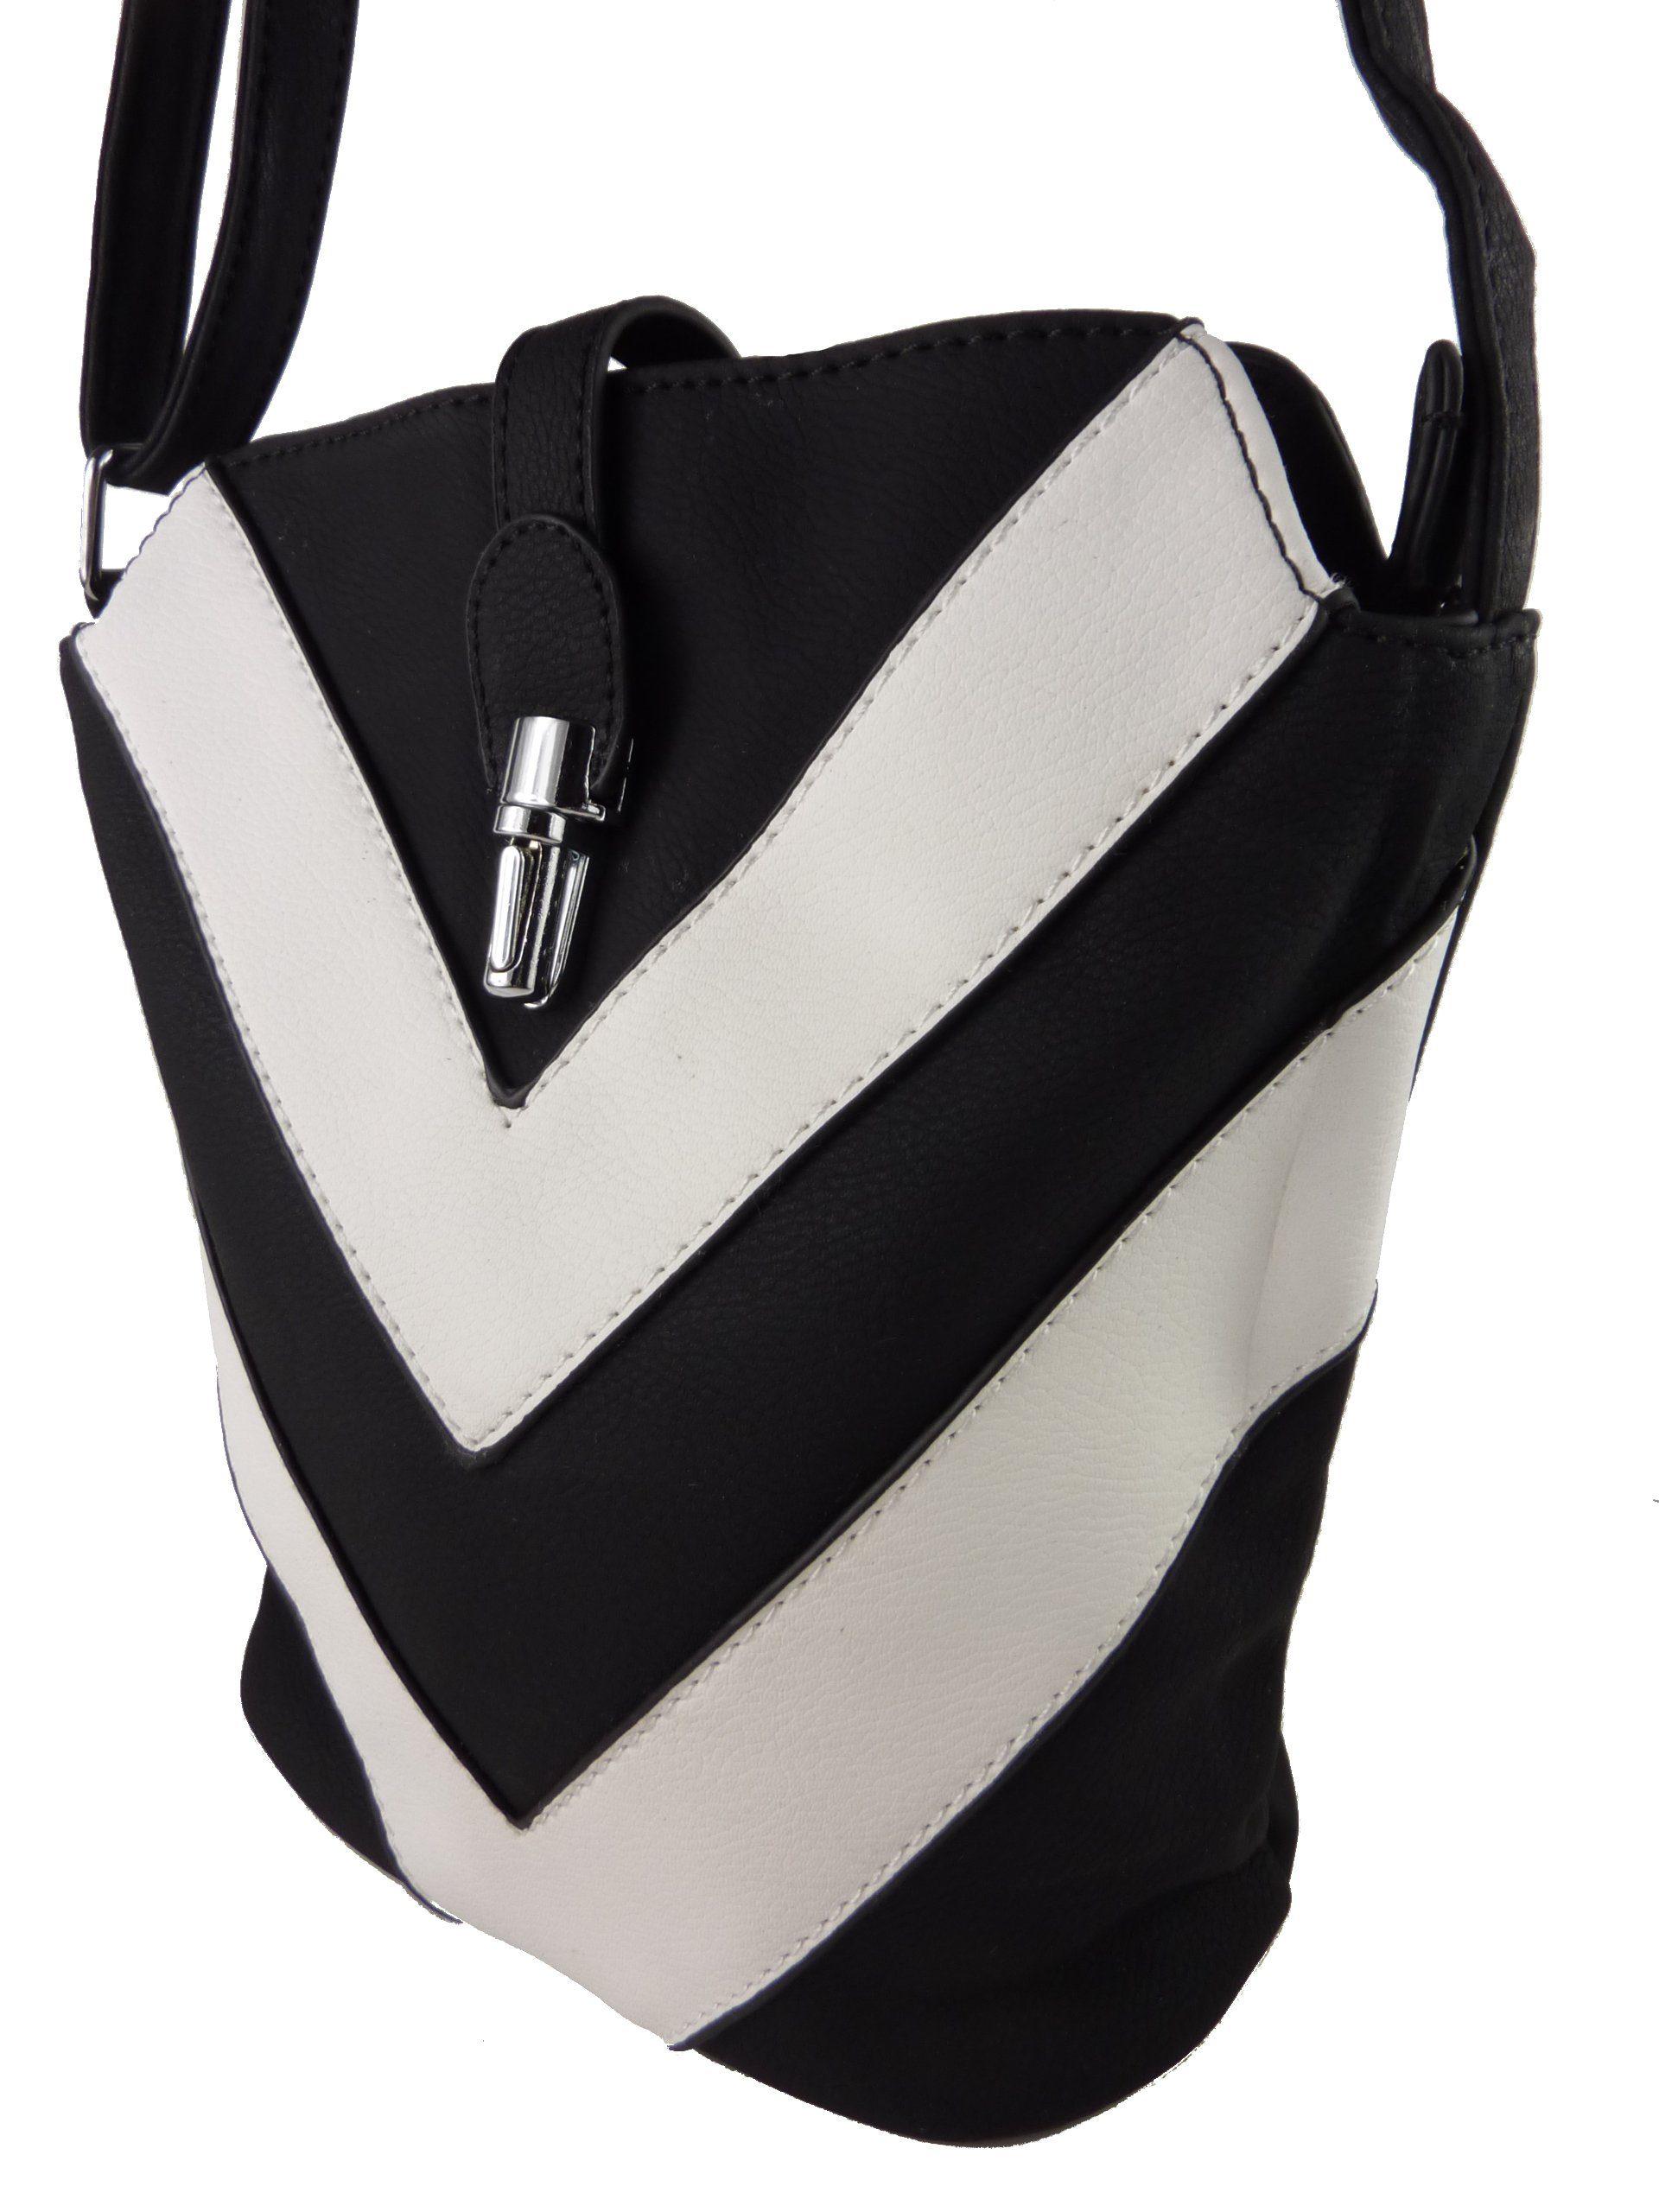 Taschen4life Umhängetasche kleine Tasche zum umhängen H0447, als Schultertasche & cross over tragbar, zweifarbiges Streifen Muster schwarz/weiß